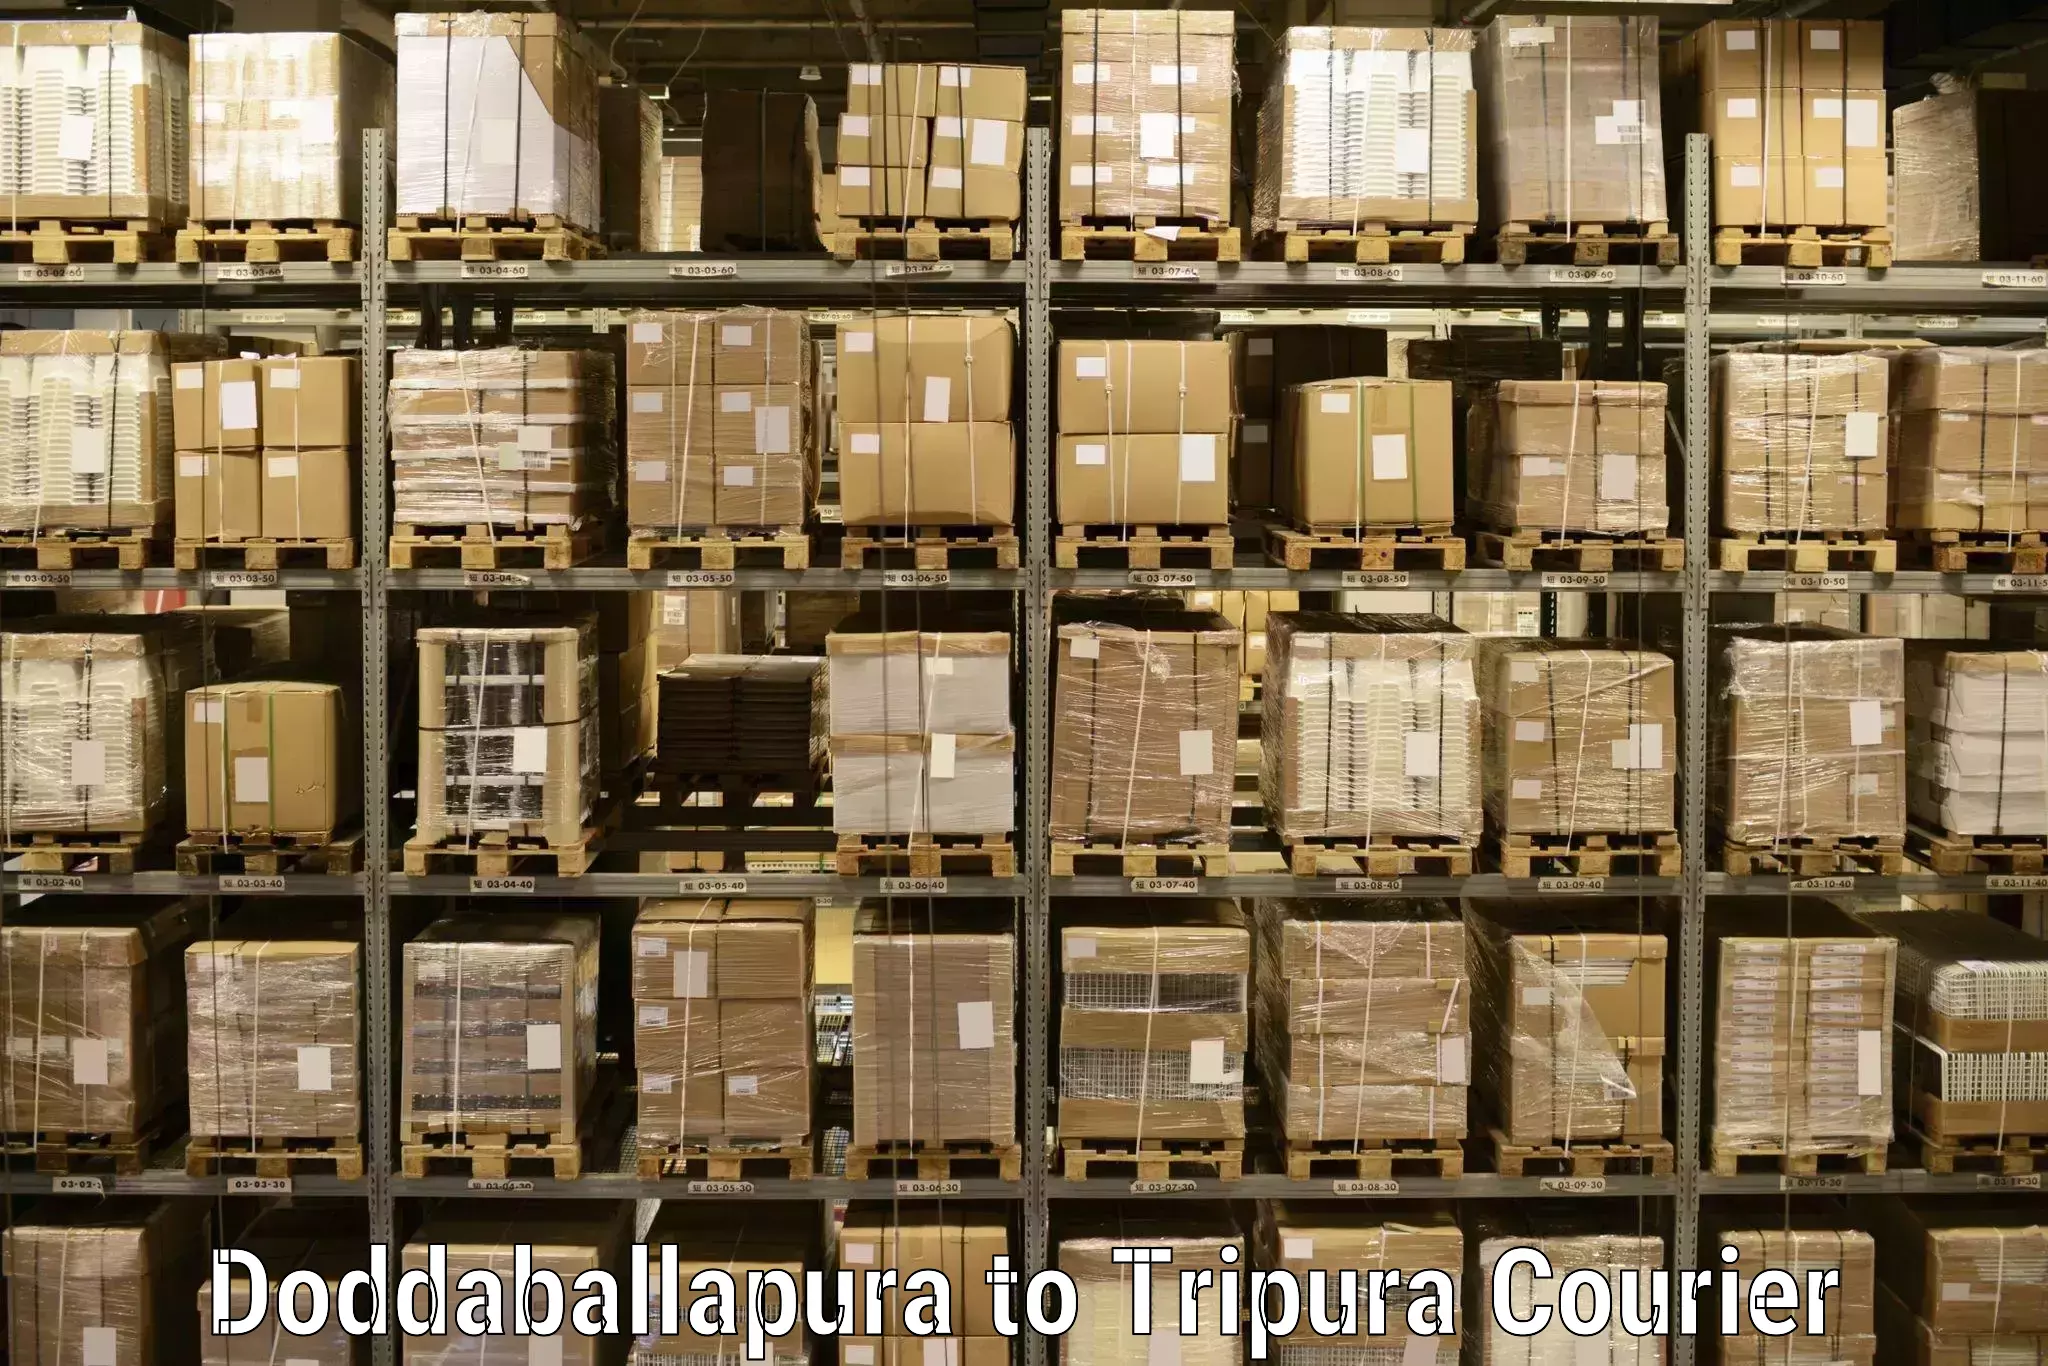 Seamless shipping experience in Doddaballapura to Khowai